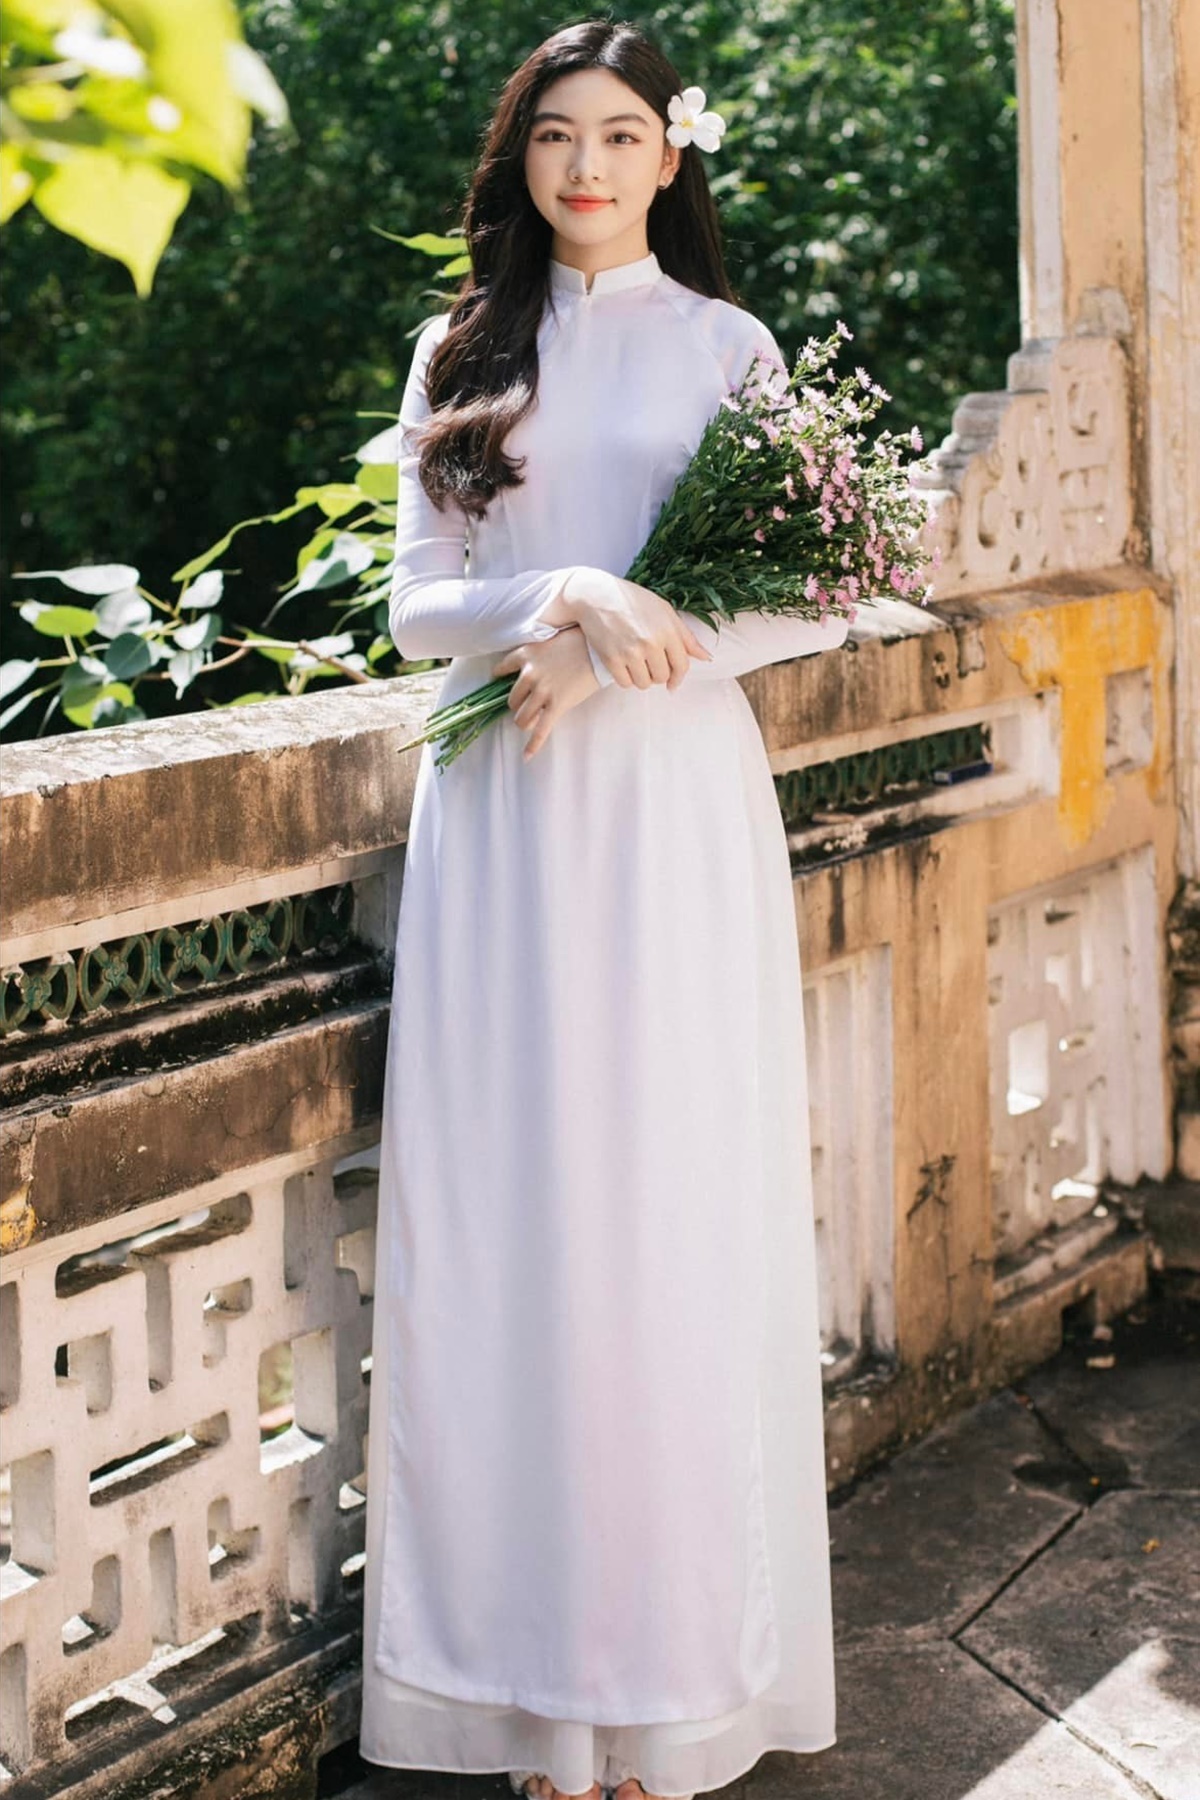 Mê mệt với nhan sắc "chuẩn Hoa hậu" của con gái Quyền Linh